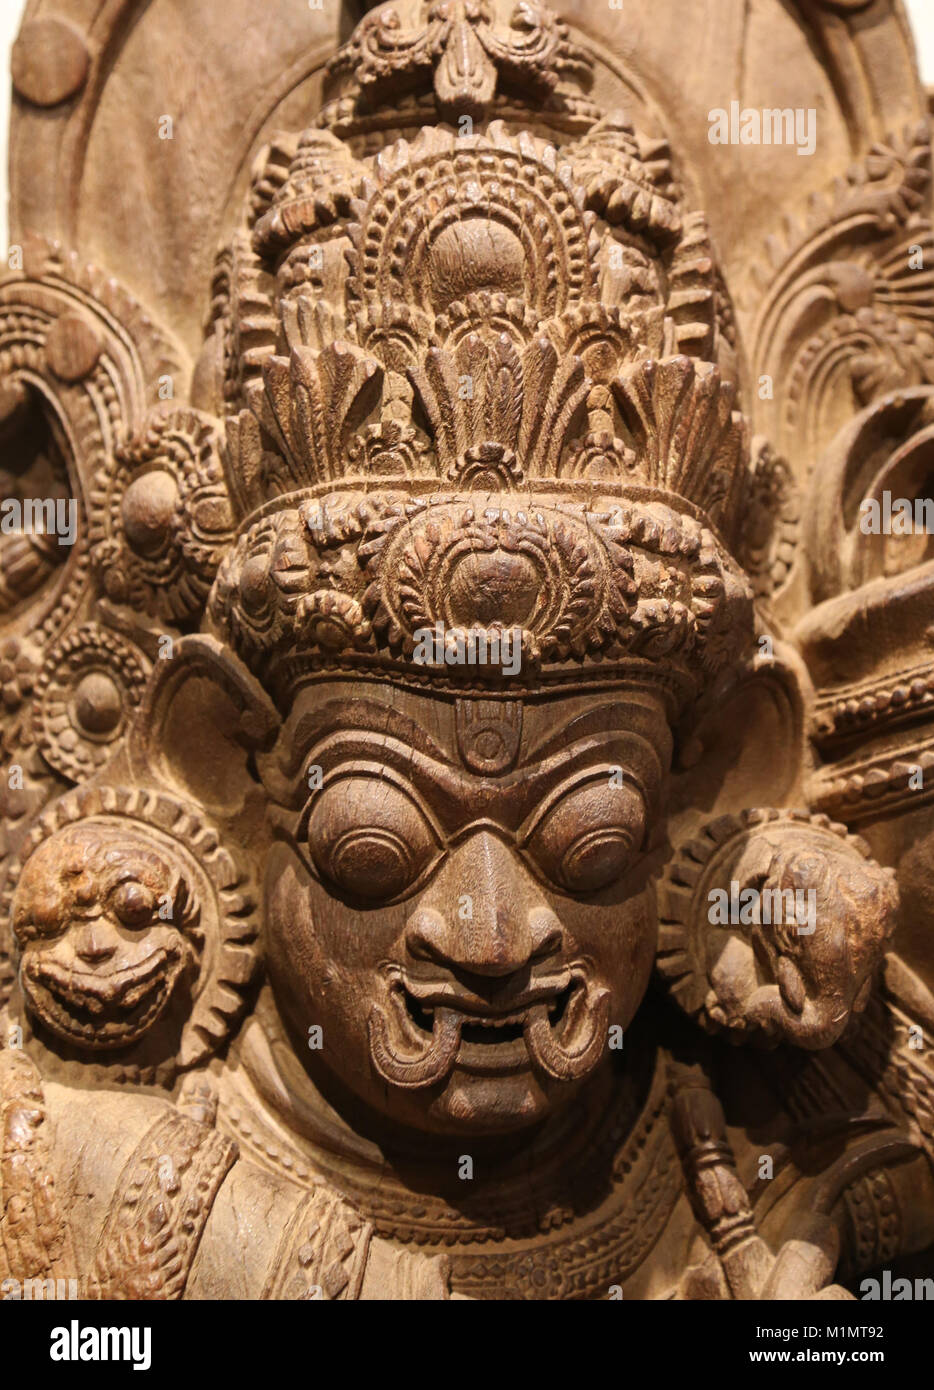 Dvarapala, gardien d'un Temple. Sculpture en bois sculpté, 16ème-17ème siècles. Le Kerala, au sud de l'Inde. Artiste inconnu. Détail de la face. Banque D'Images